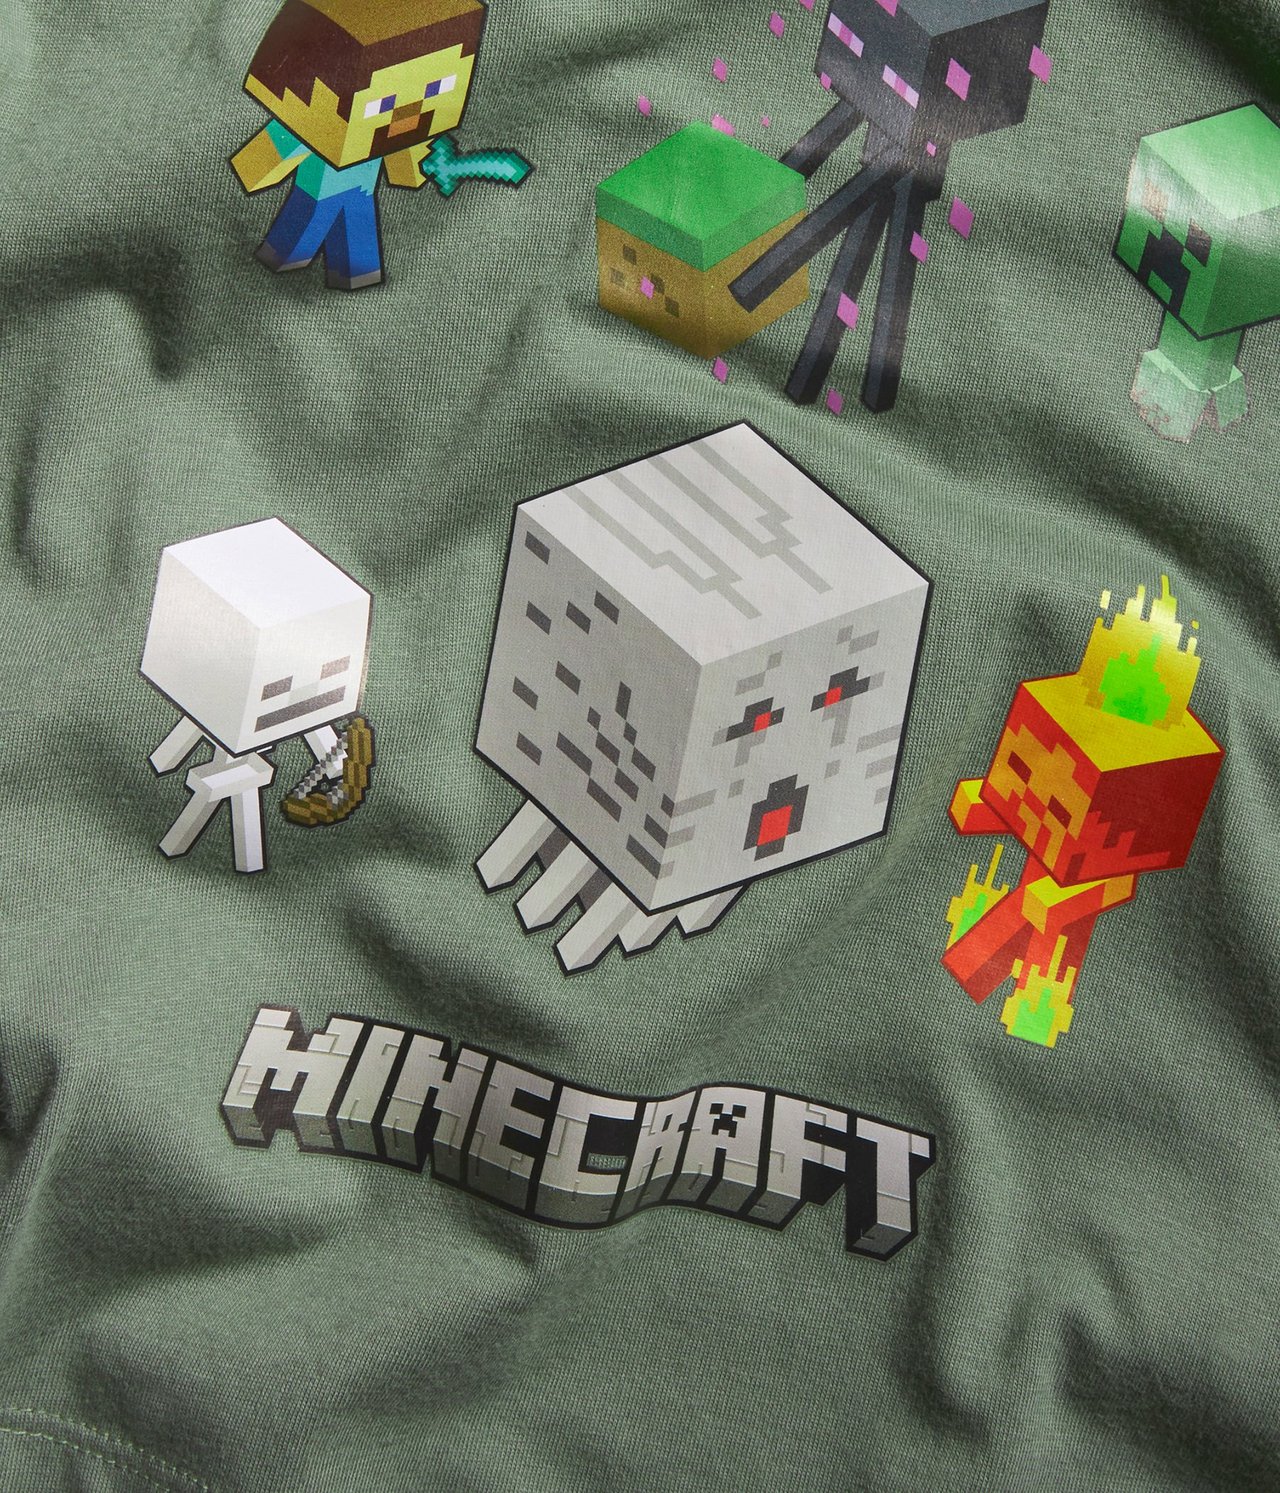 T-shirt Minecraft Grön - null - 4